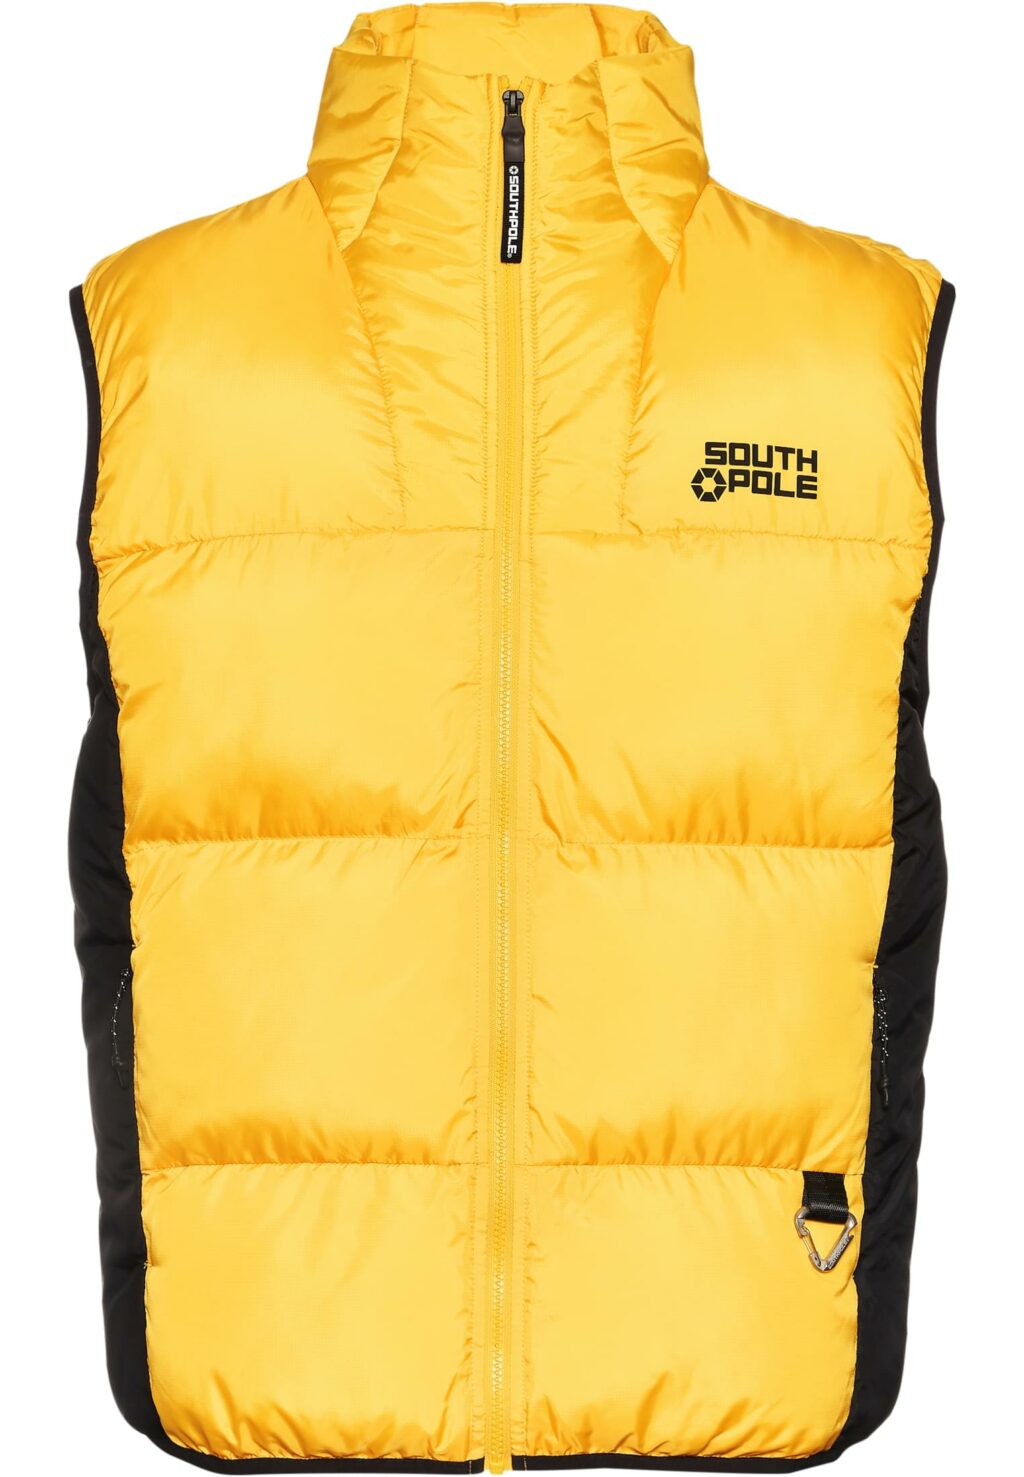 PM234-006-3 SP Bubble Vest 1.0 yellow/black 6072273